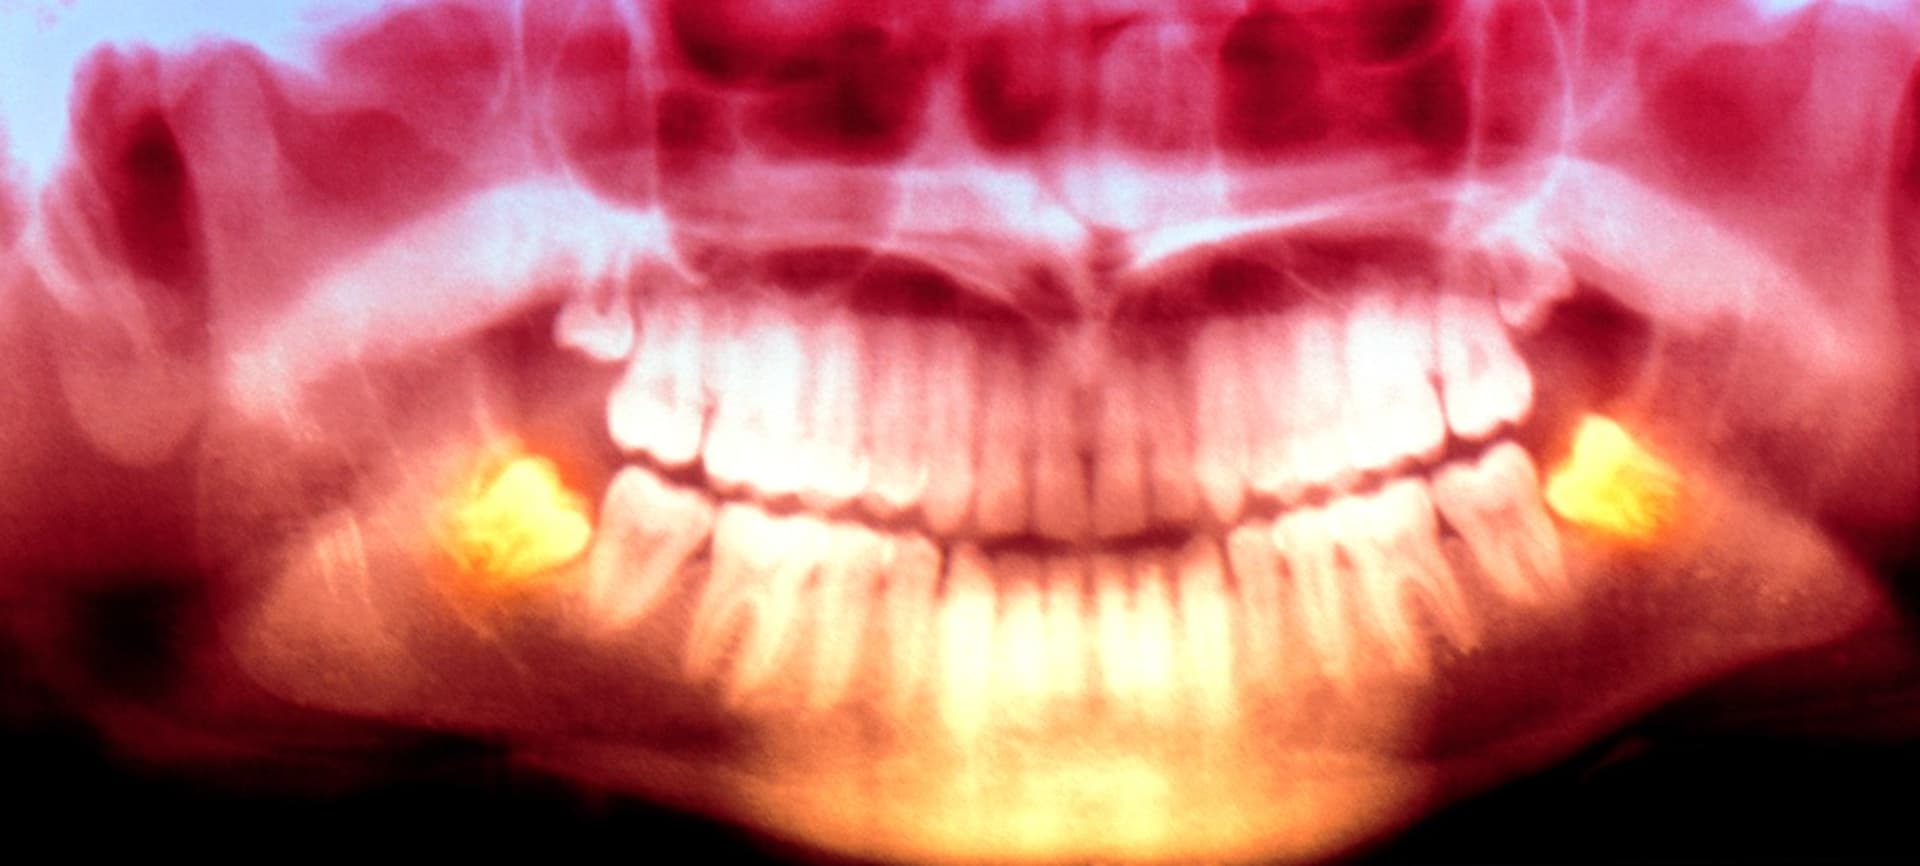 Vědci z Arizonské univerzity zřejmě vyřešili otázku, proč lidem rostou zuby moudrosti až na prahu dospělosti.